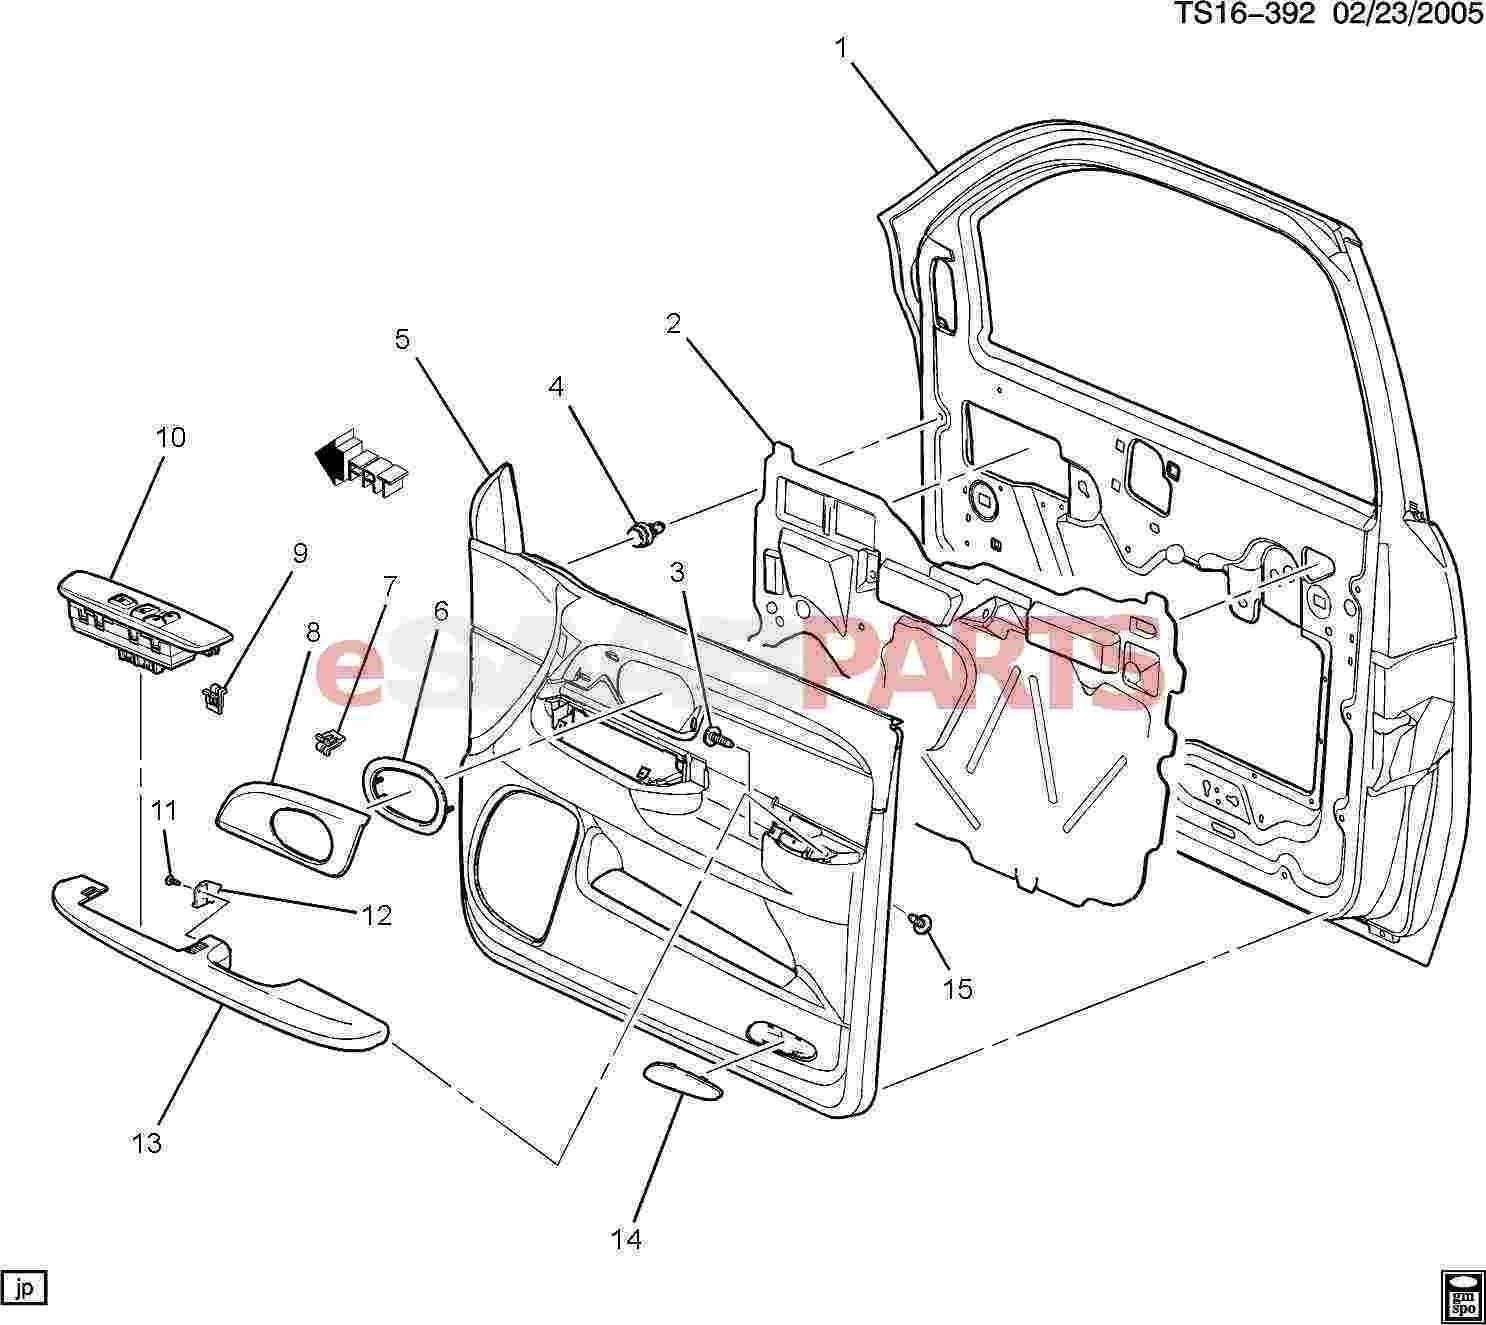 Ar 15 Parts Diagram Suspension Parts Diagram Ar15 Parts Diagram Automotive Wiring